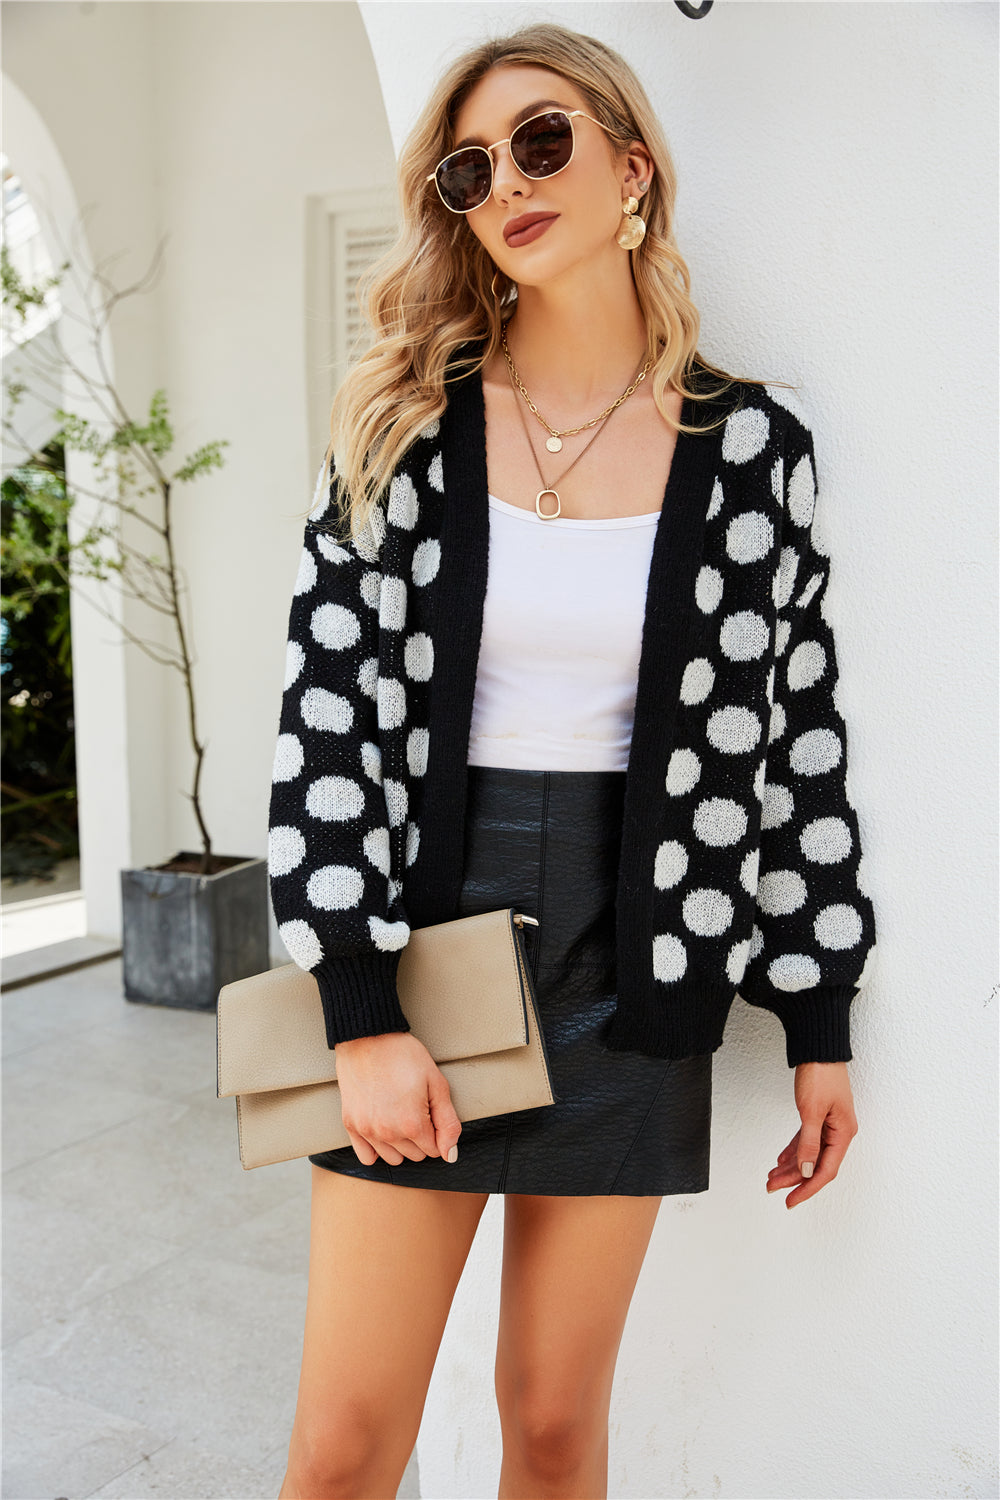 YESFASHION Women Clothing Dot Large Size Knit Cardigan Jacket Coats